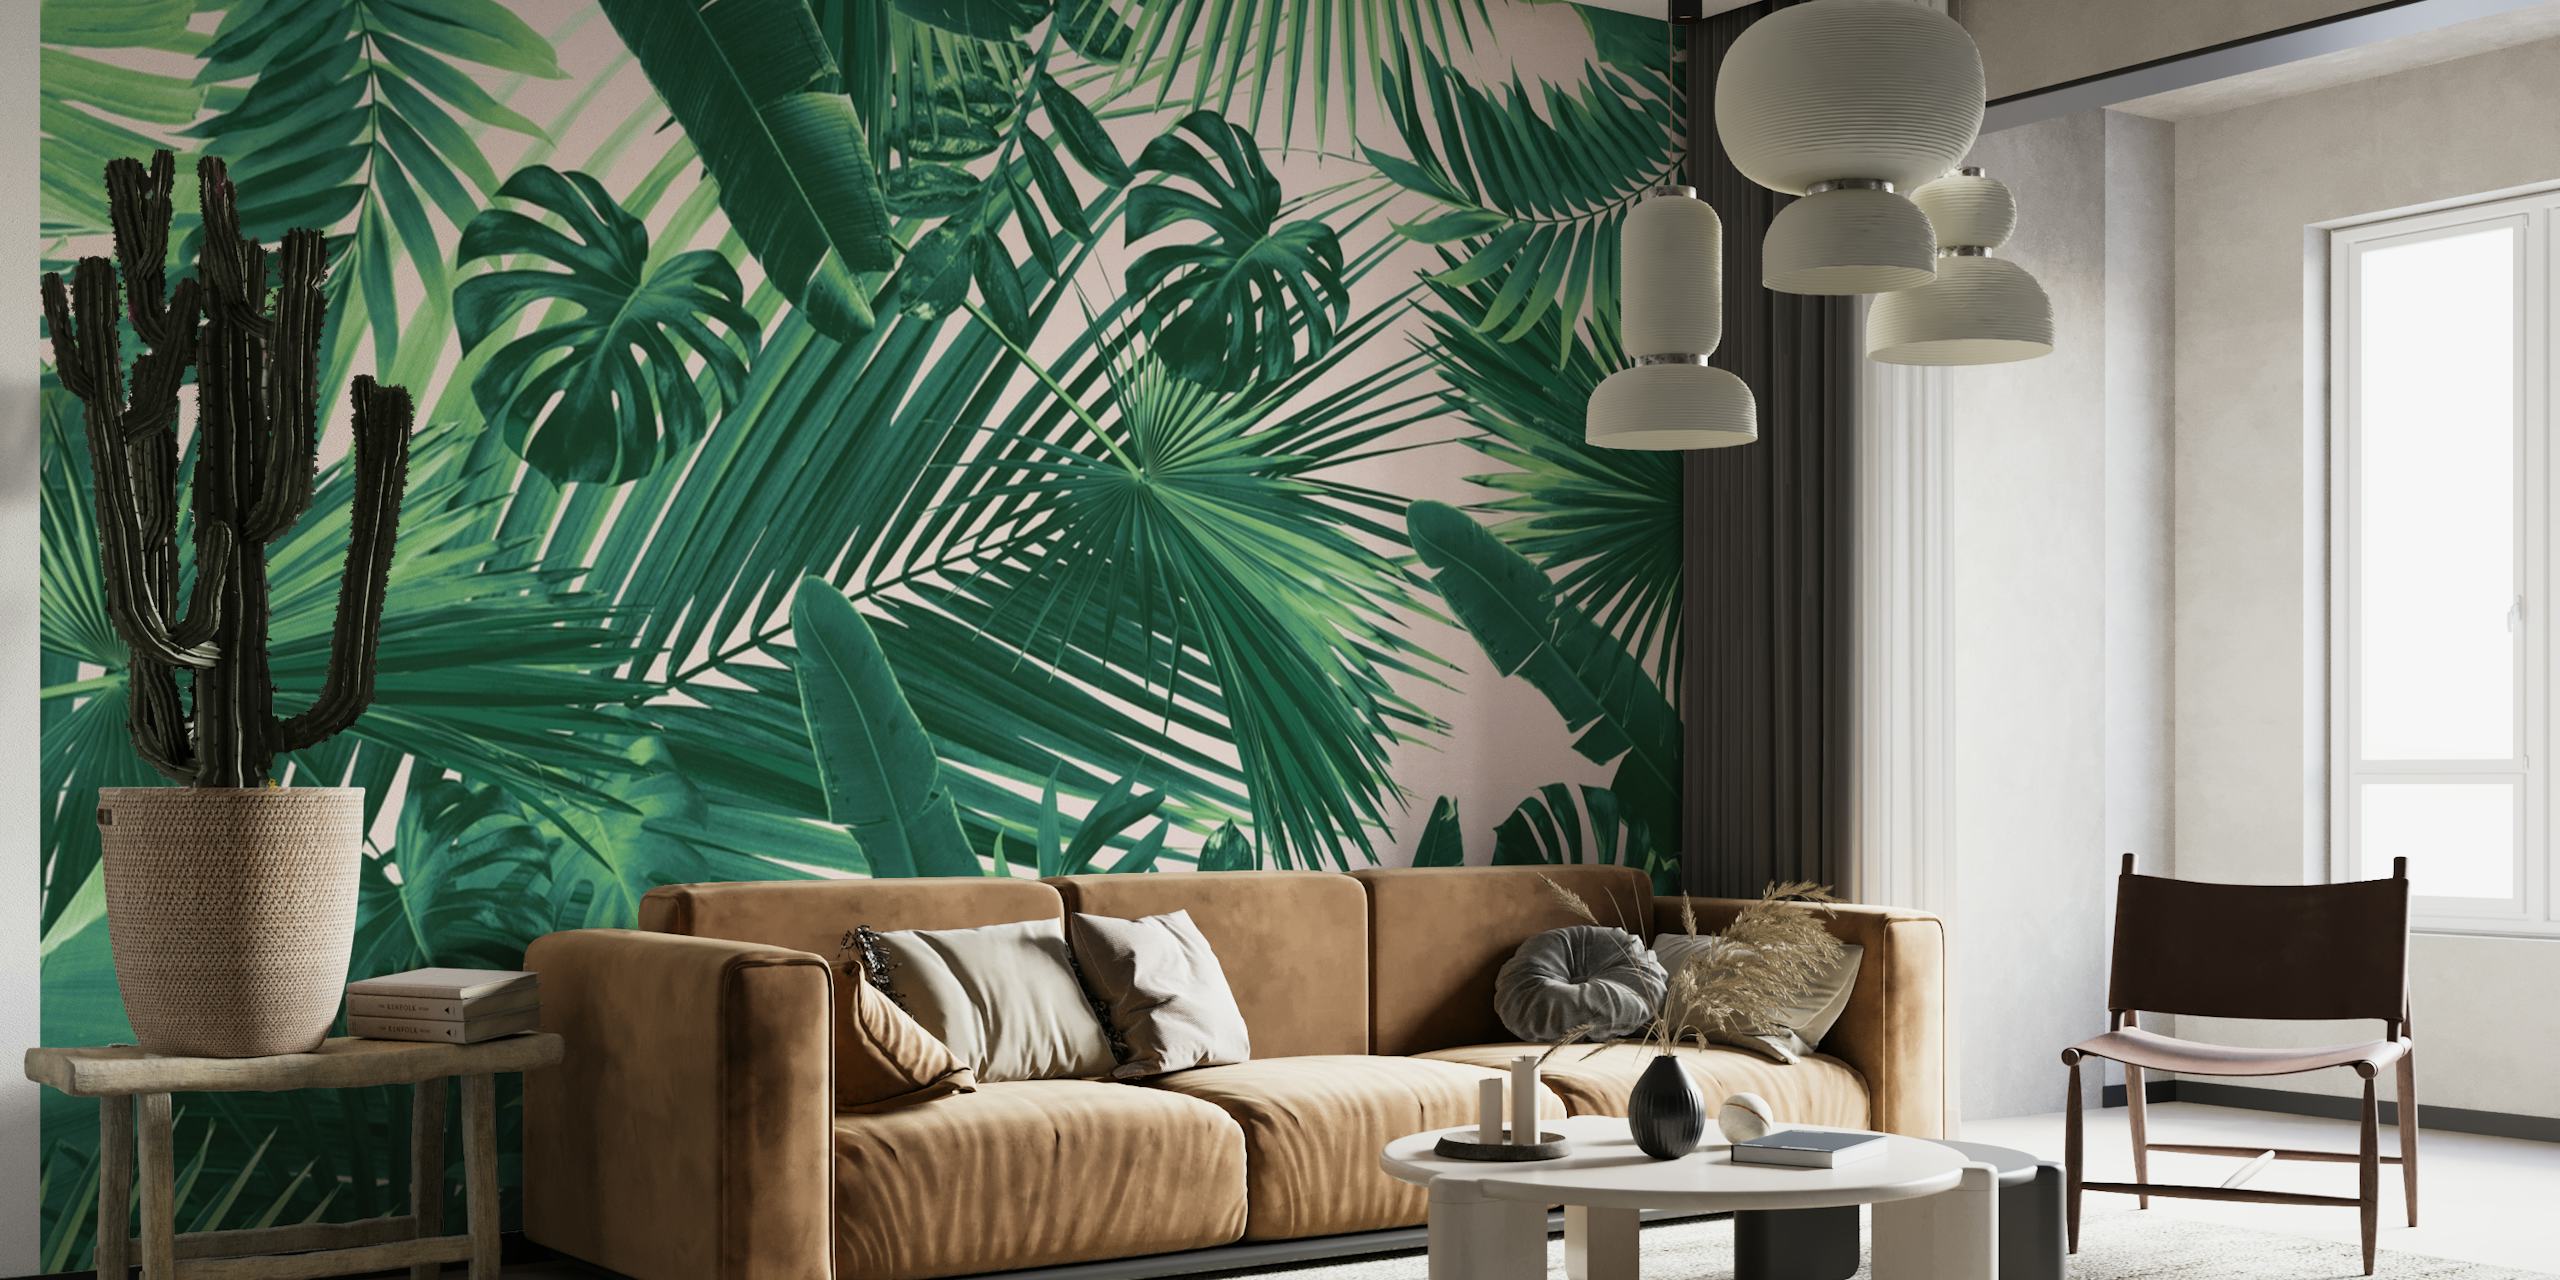 Zidni mural s dizajnom gustog lišća iz džungle u raznim nijansama zelene, stvarajući mirnu tropsku atmosferu.